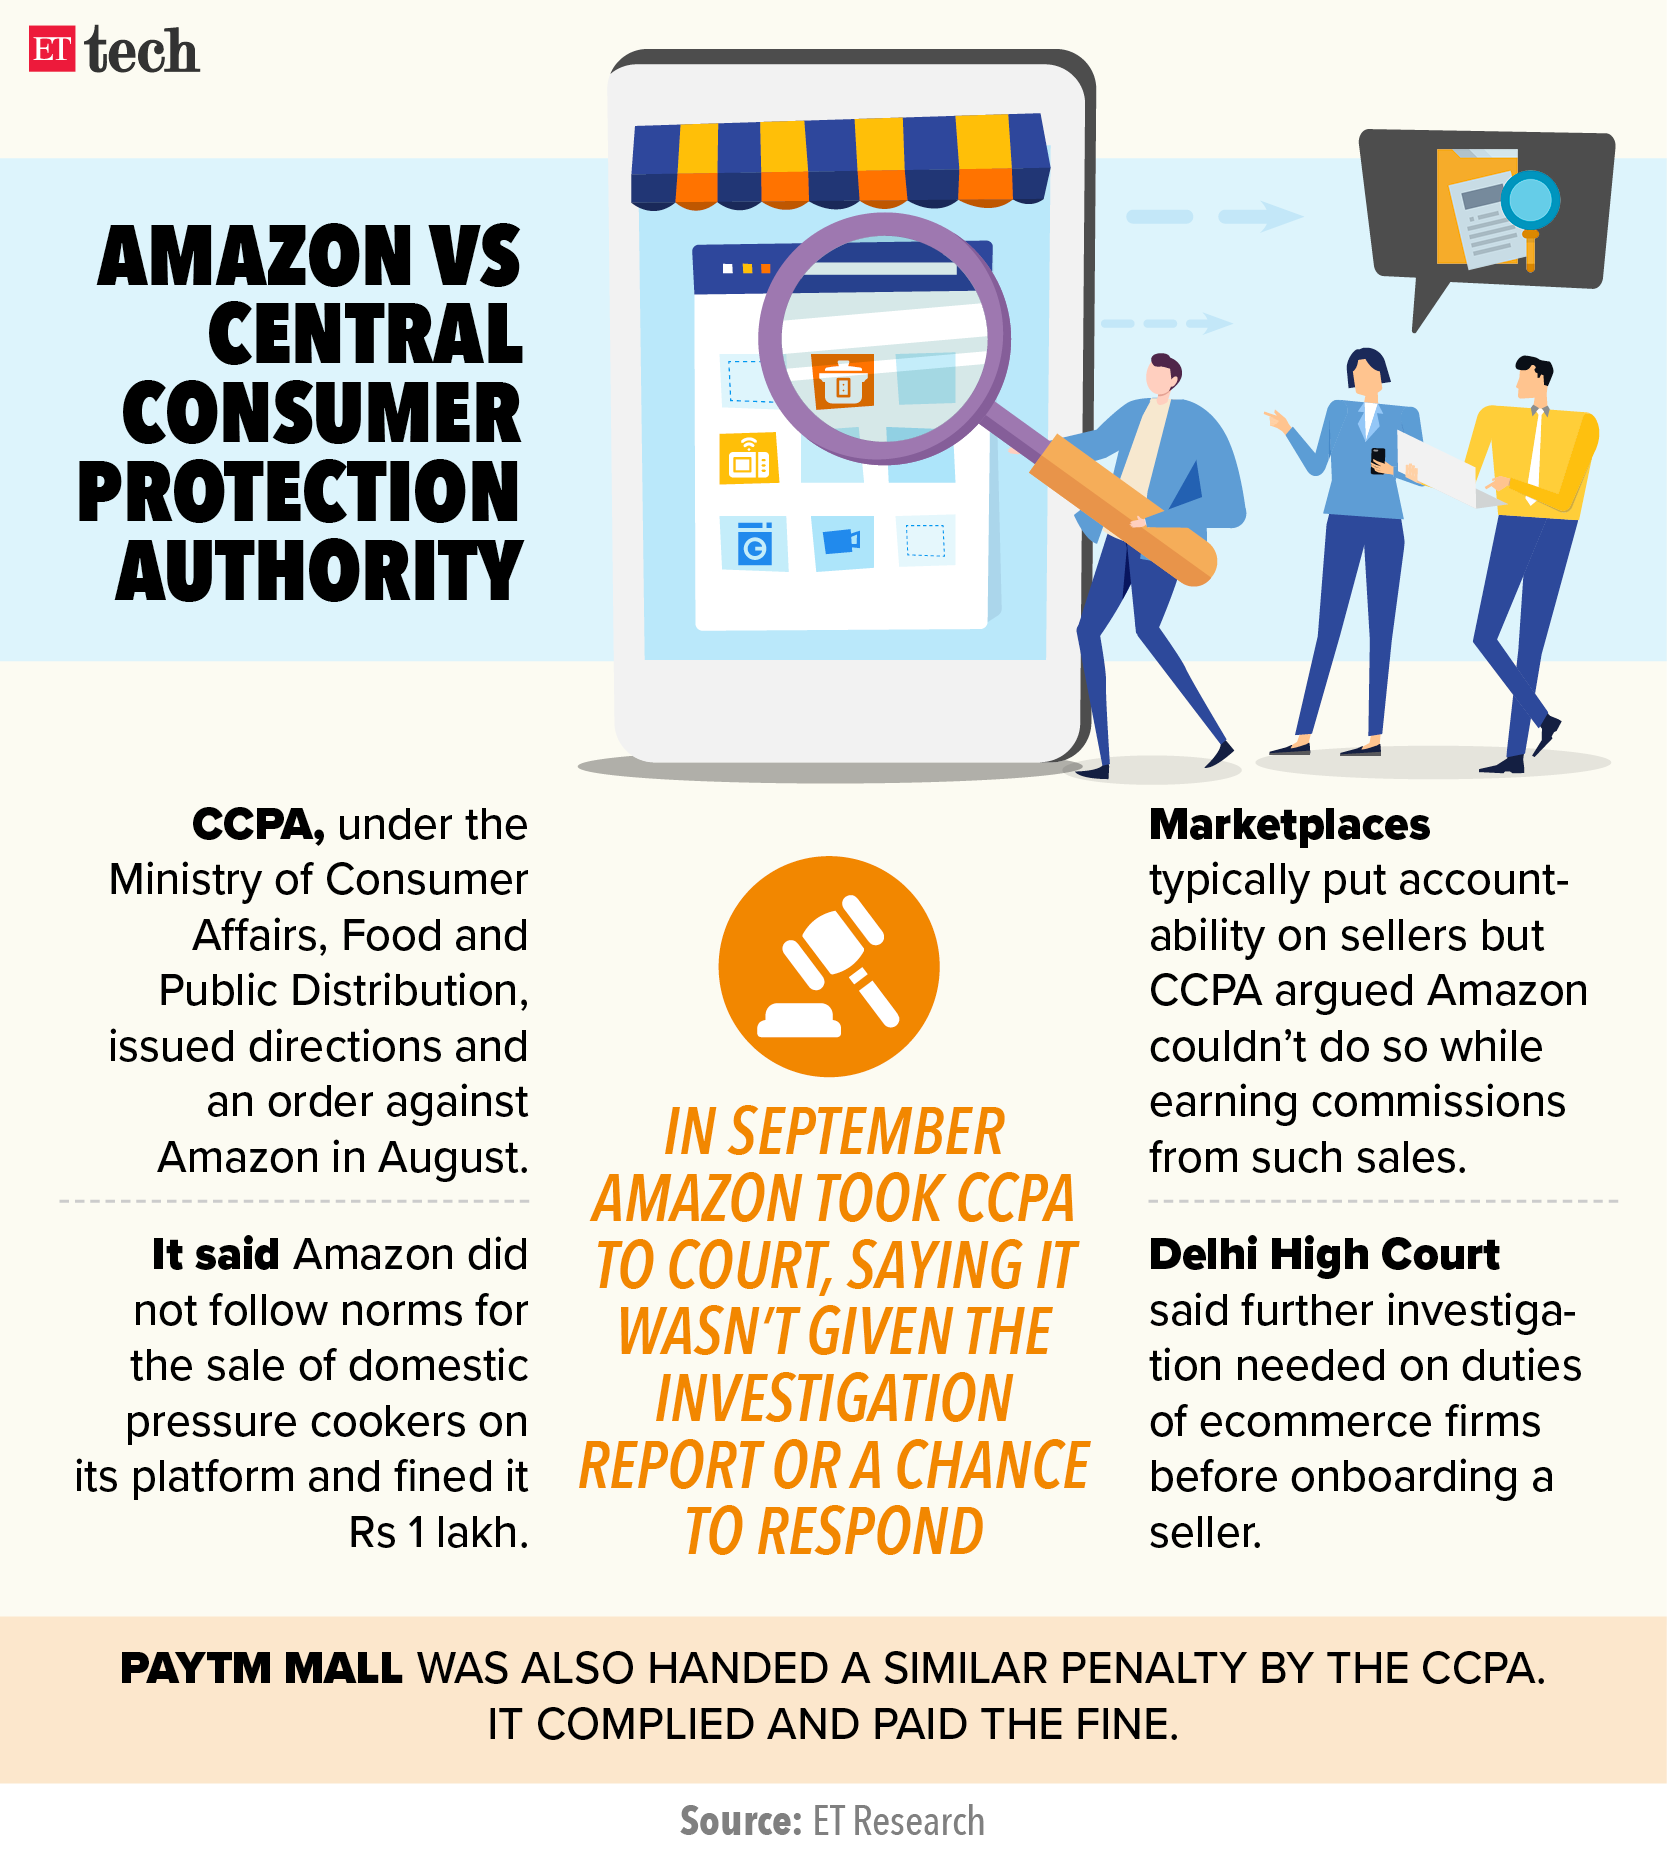 Amazon vs Central Consumer